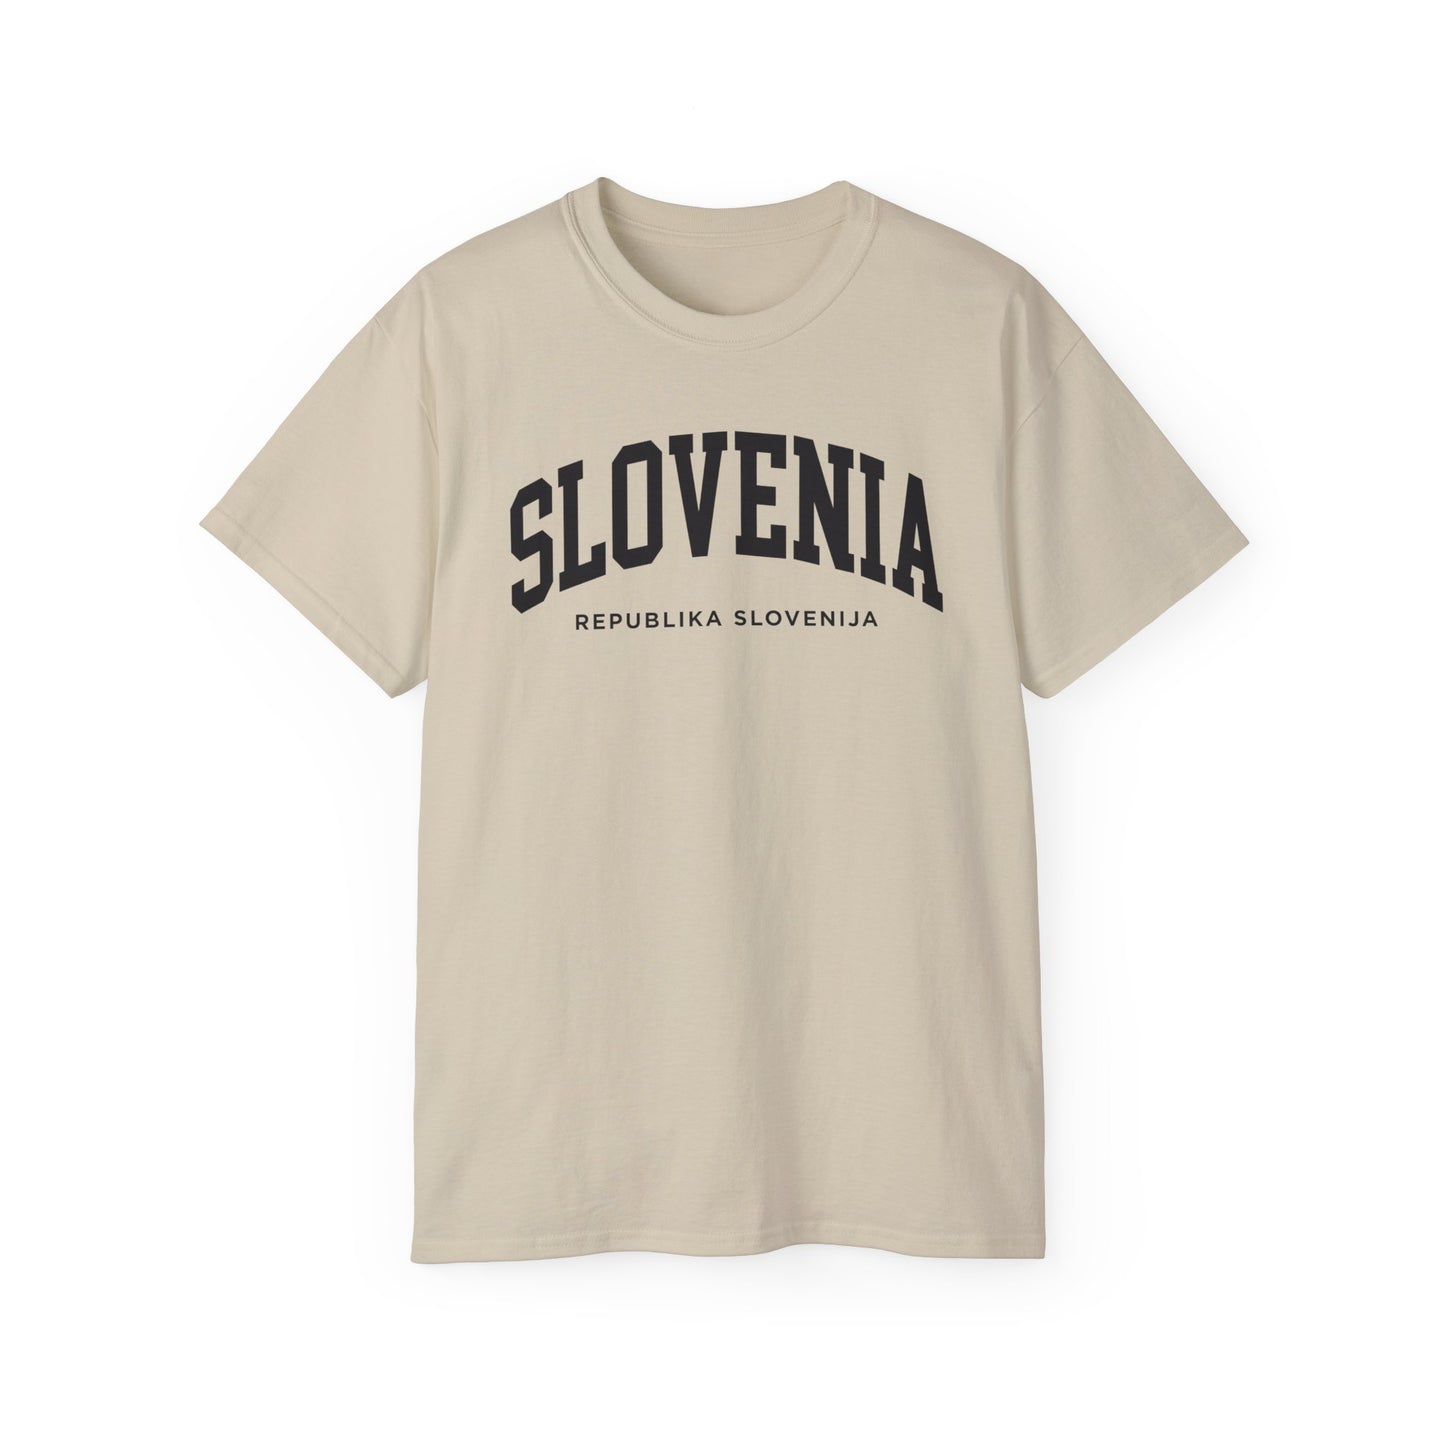 Slovenia Tee